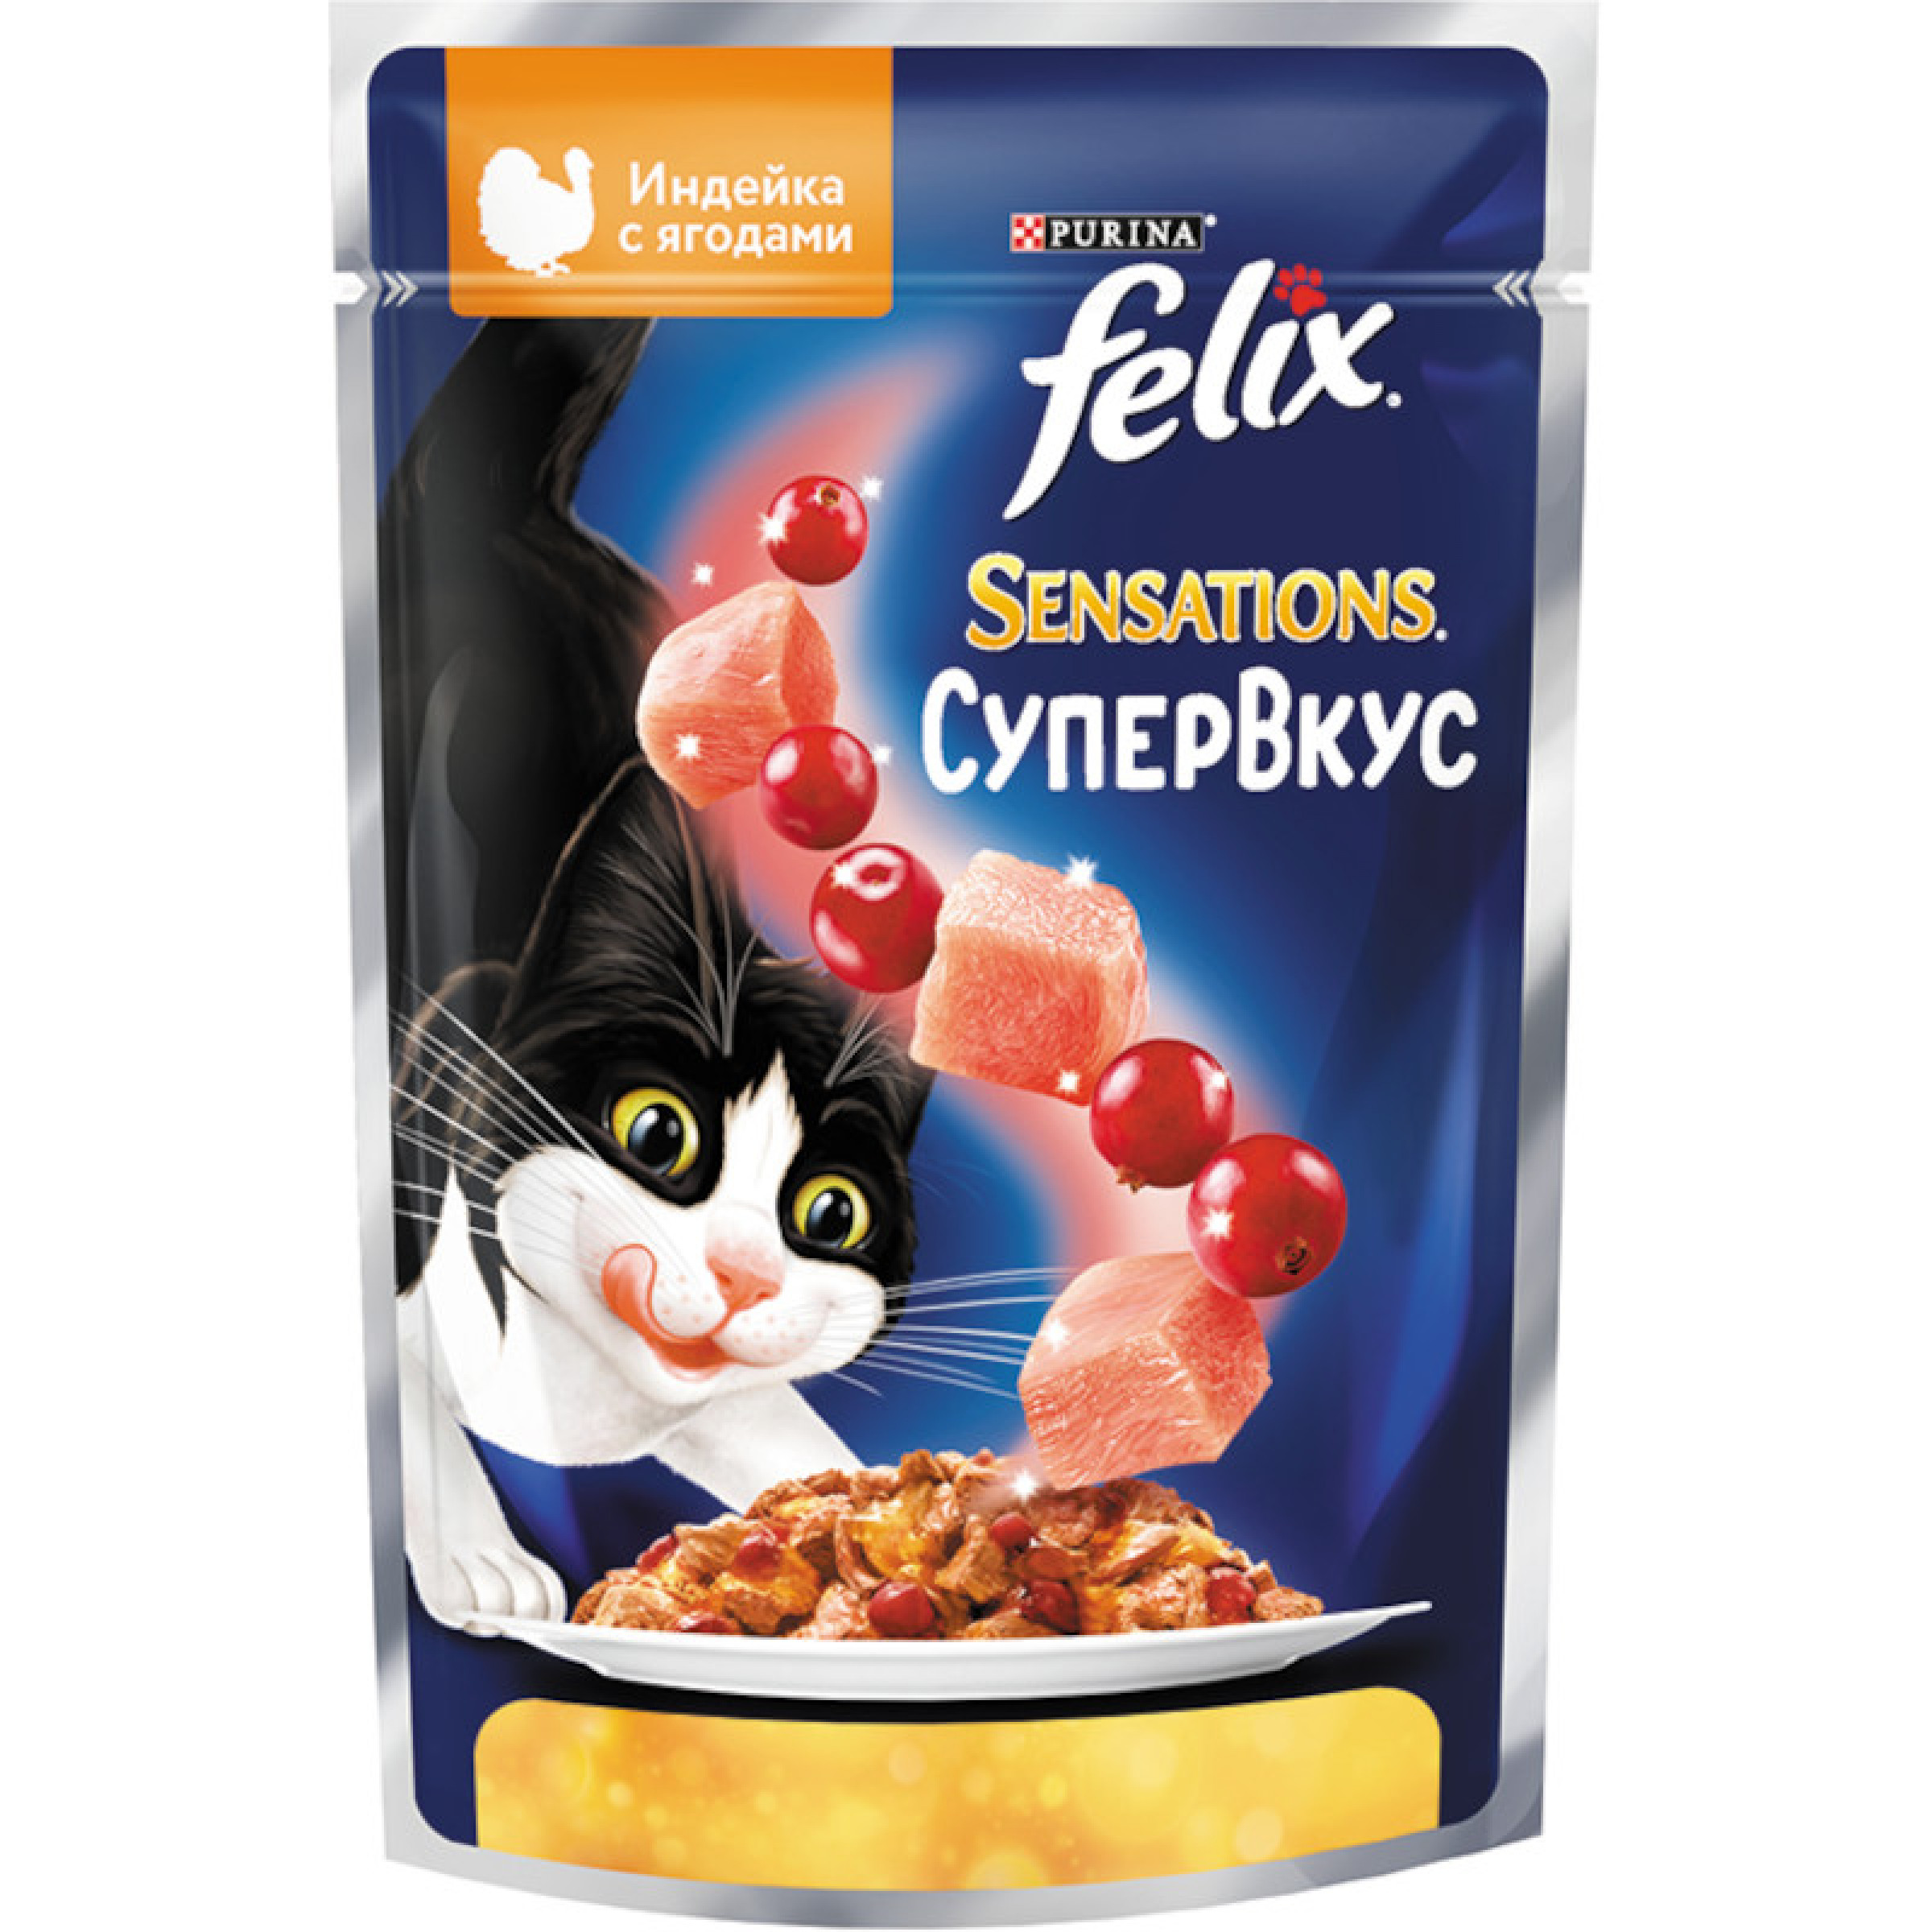 Влажный корм Felix Супервкус с индейкой и ягодами в желе Sensations 75 г